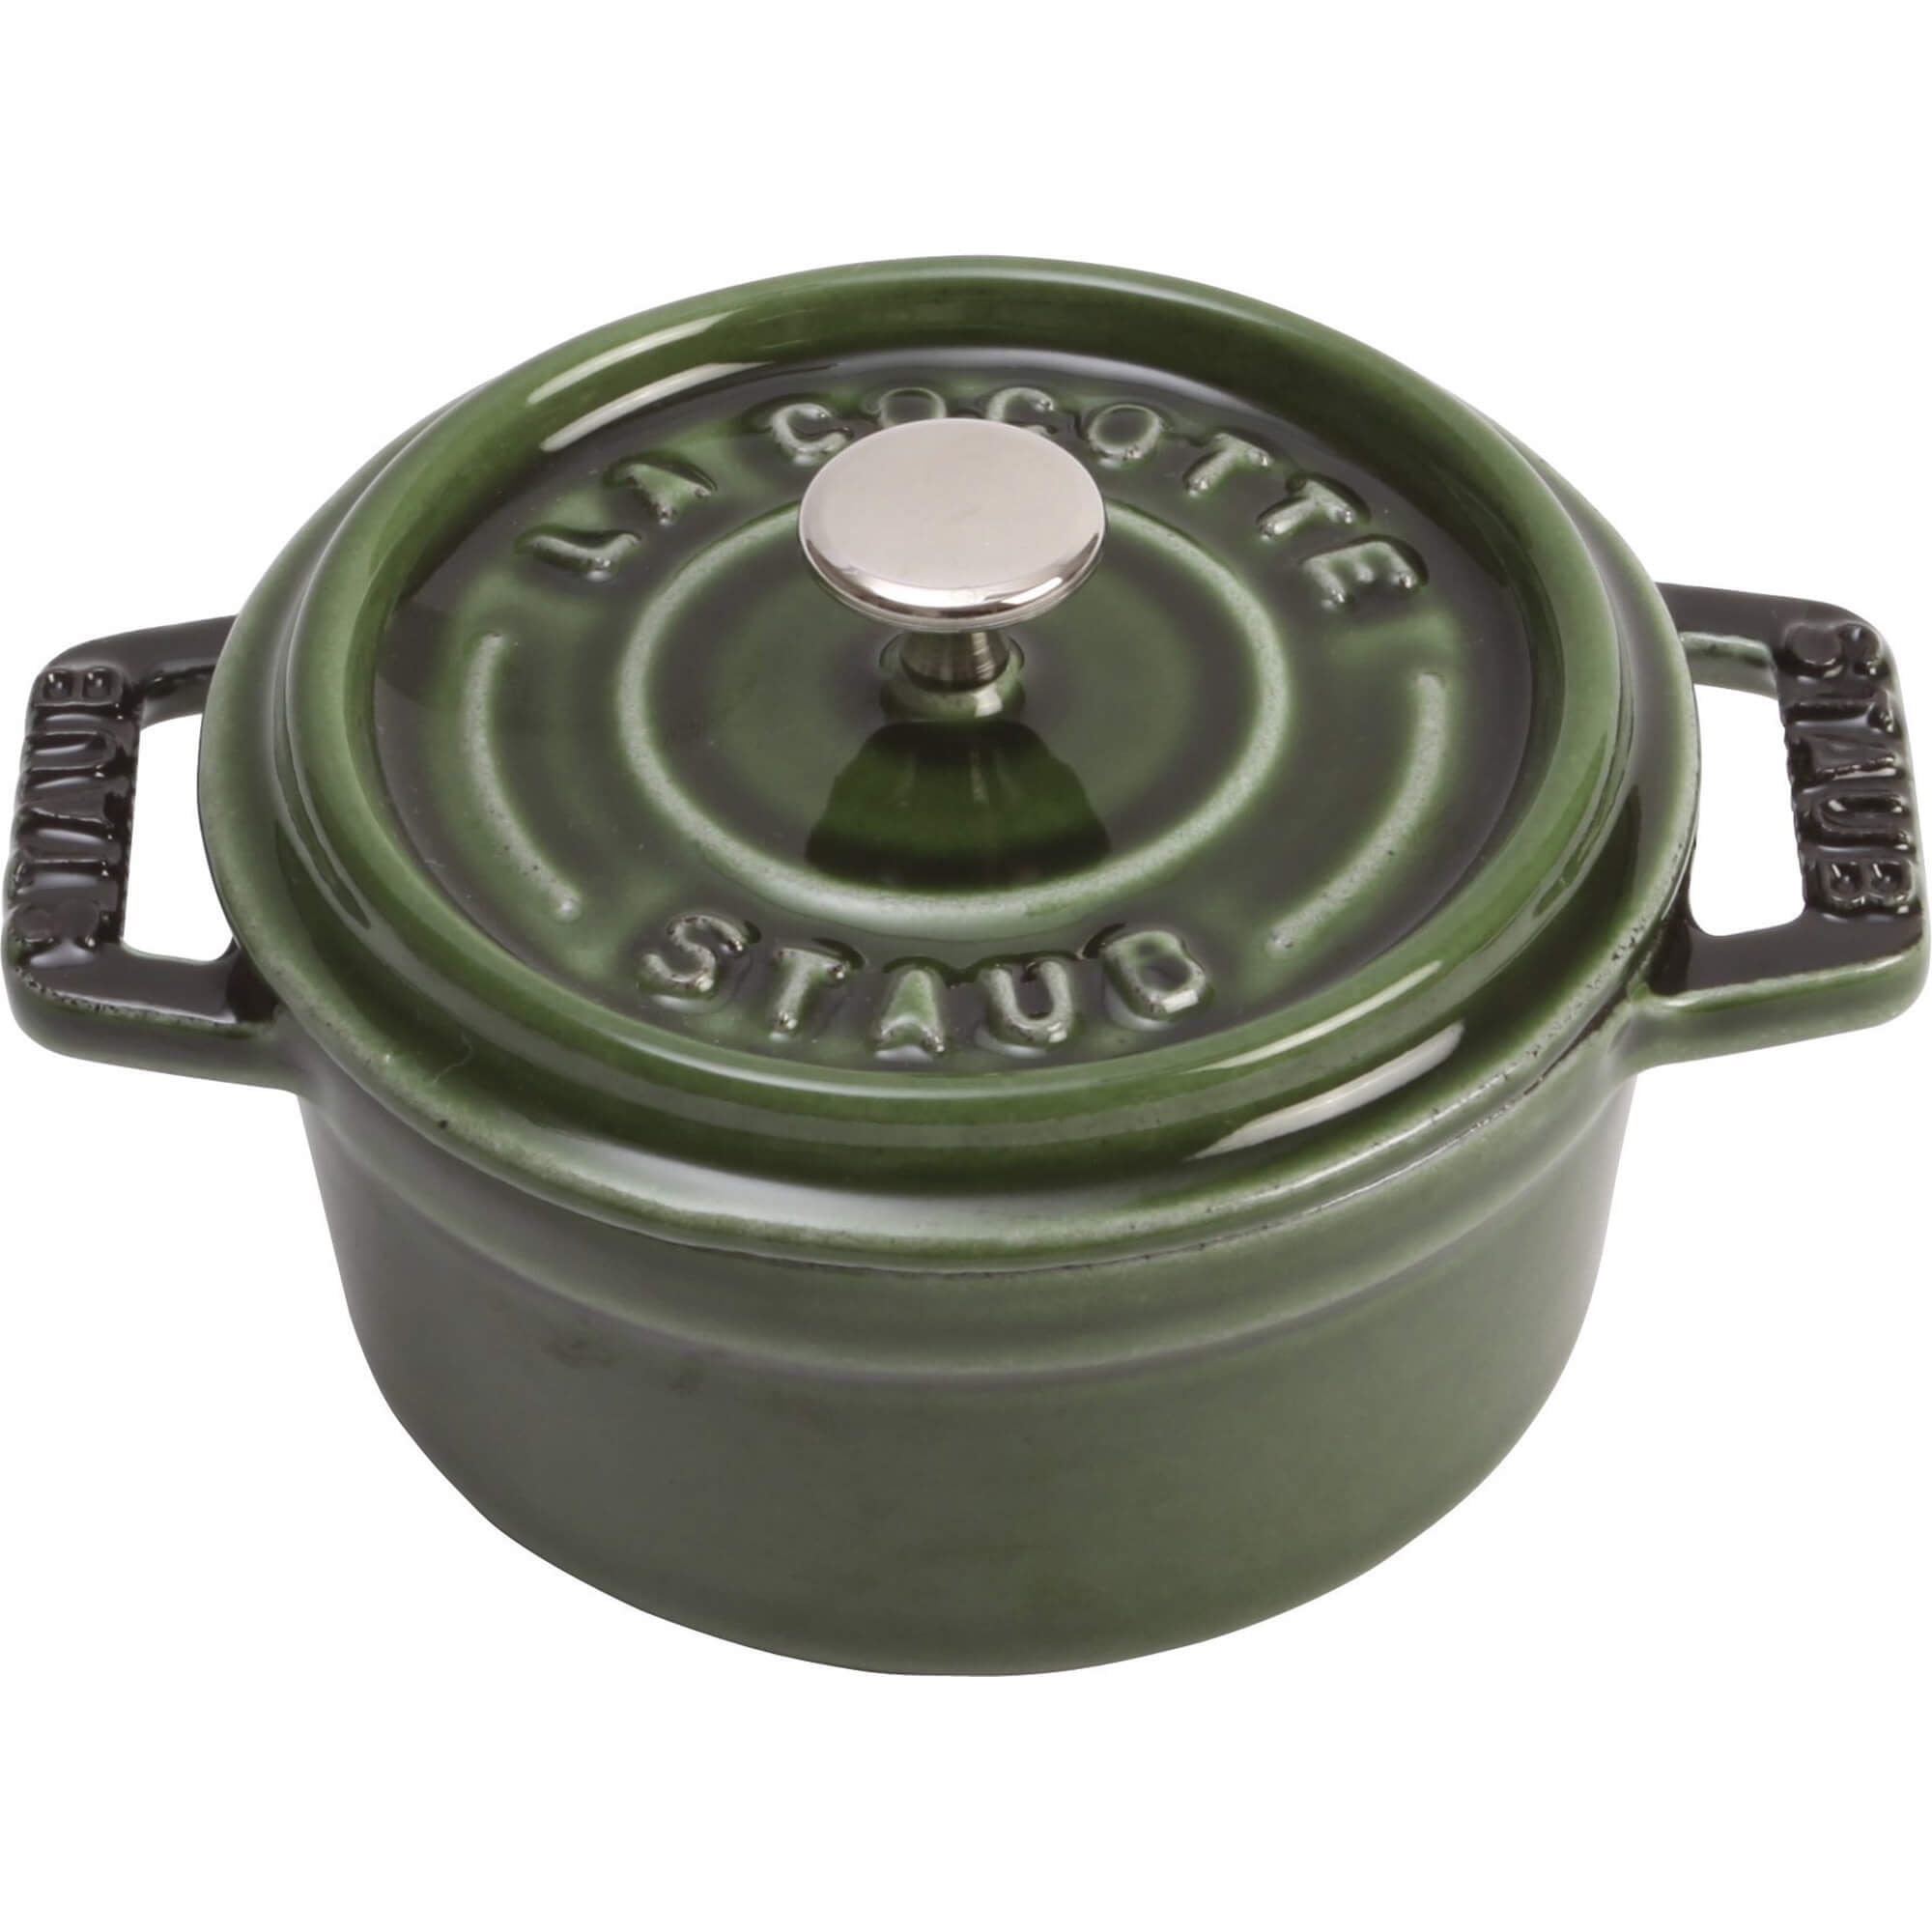 STAUB Cast Iron 0.5-qt Round Cocotte - Bed Bath & Beyond - 18553327